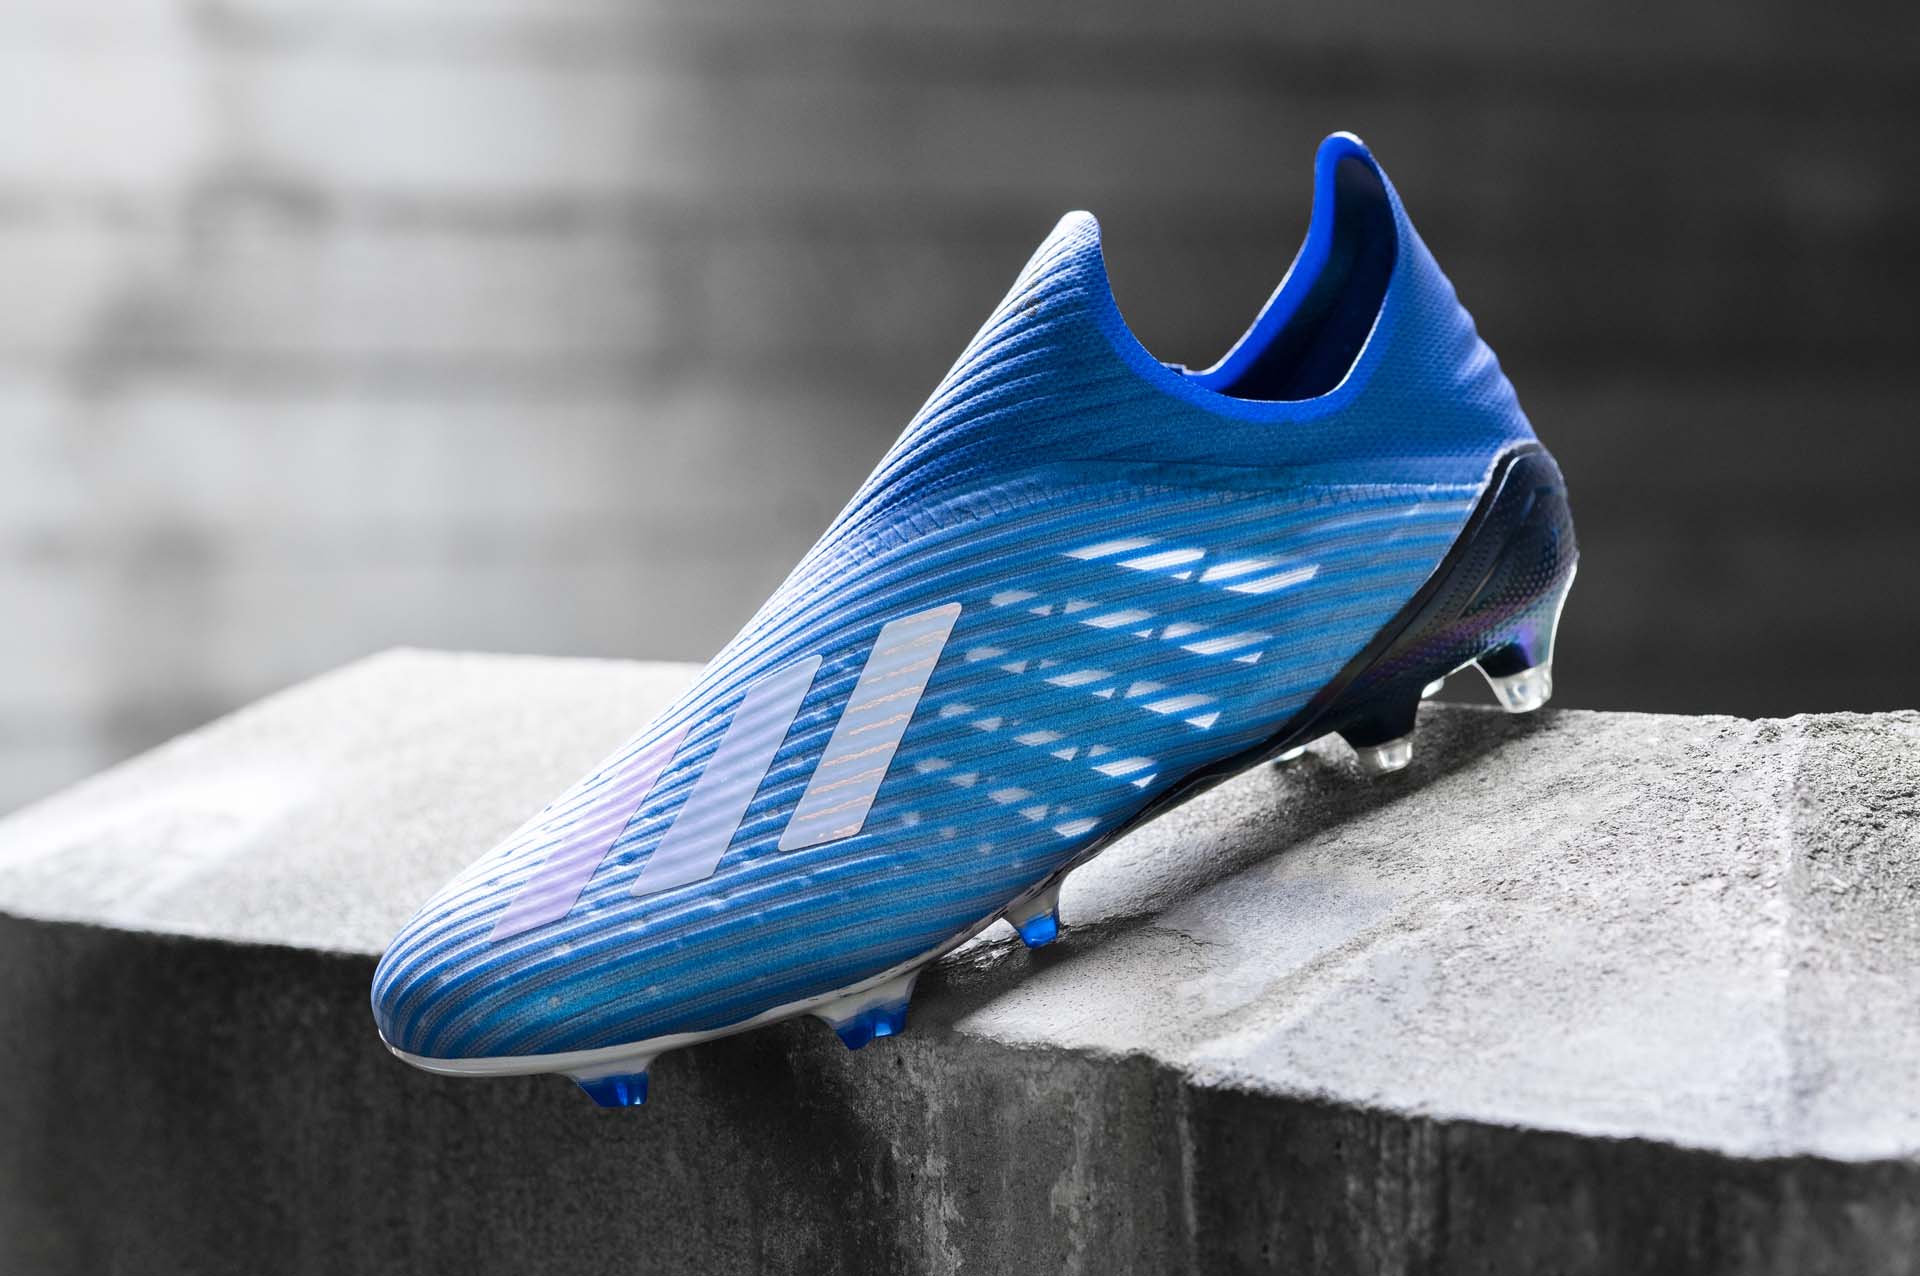 Giày đá bóng trợ tốc siêu nhẹ Adidas X19+ xanh dương